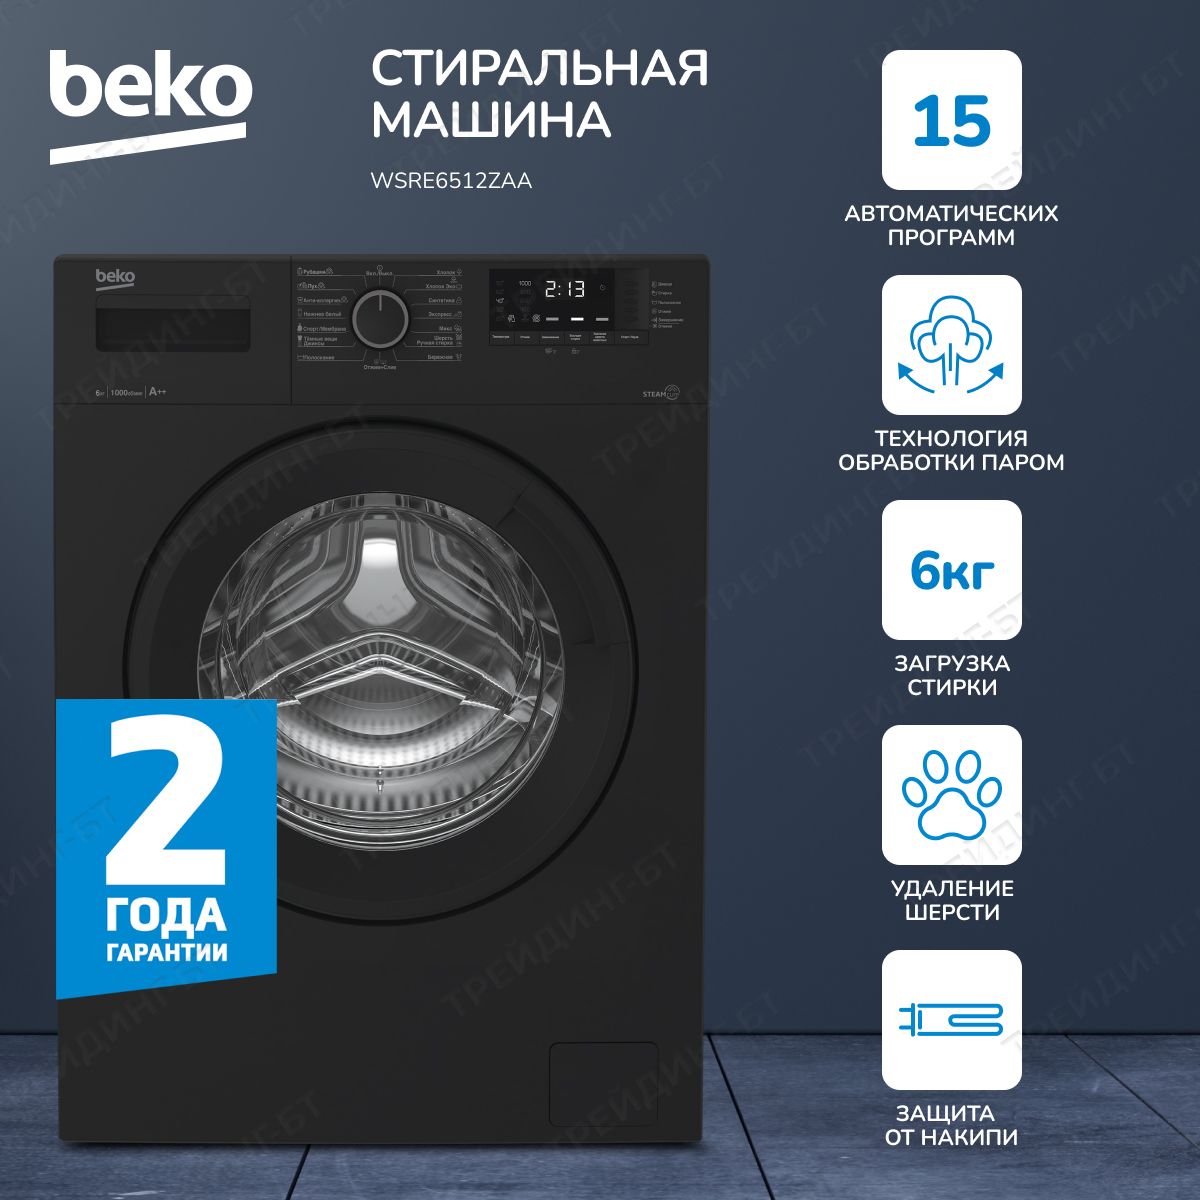 Ремонт стиральных машин Beko в Москве по выгодной цене на дому